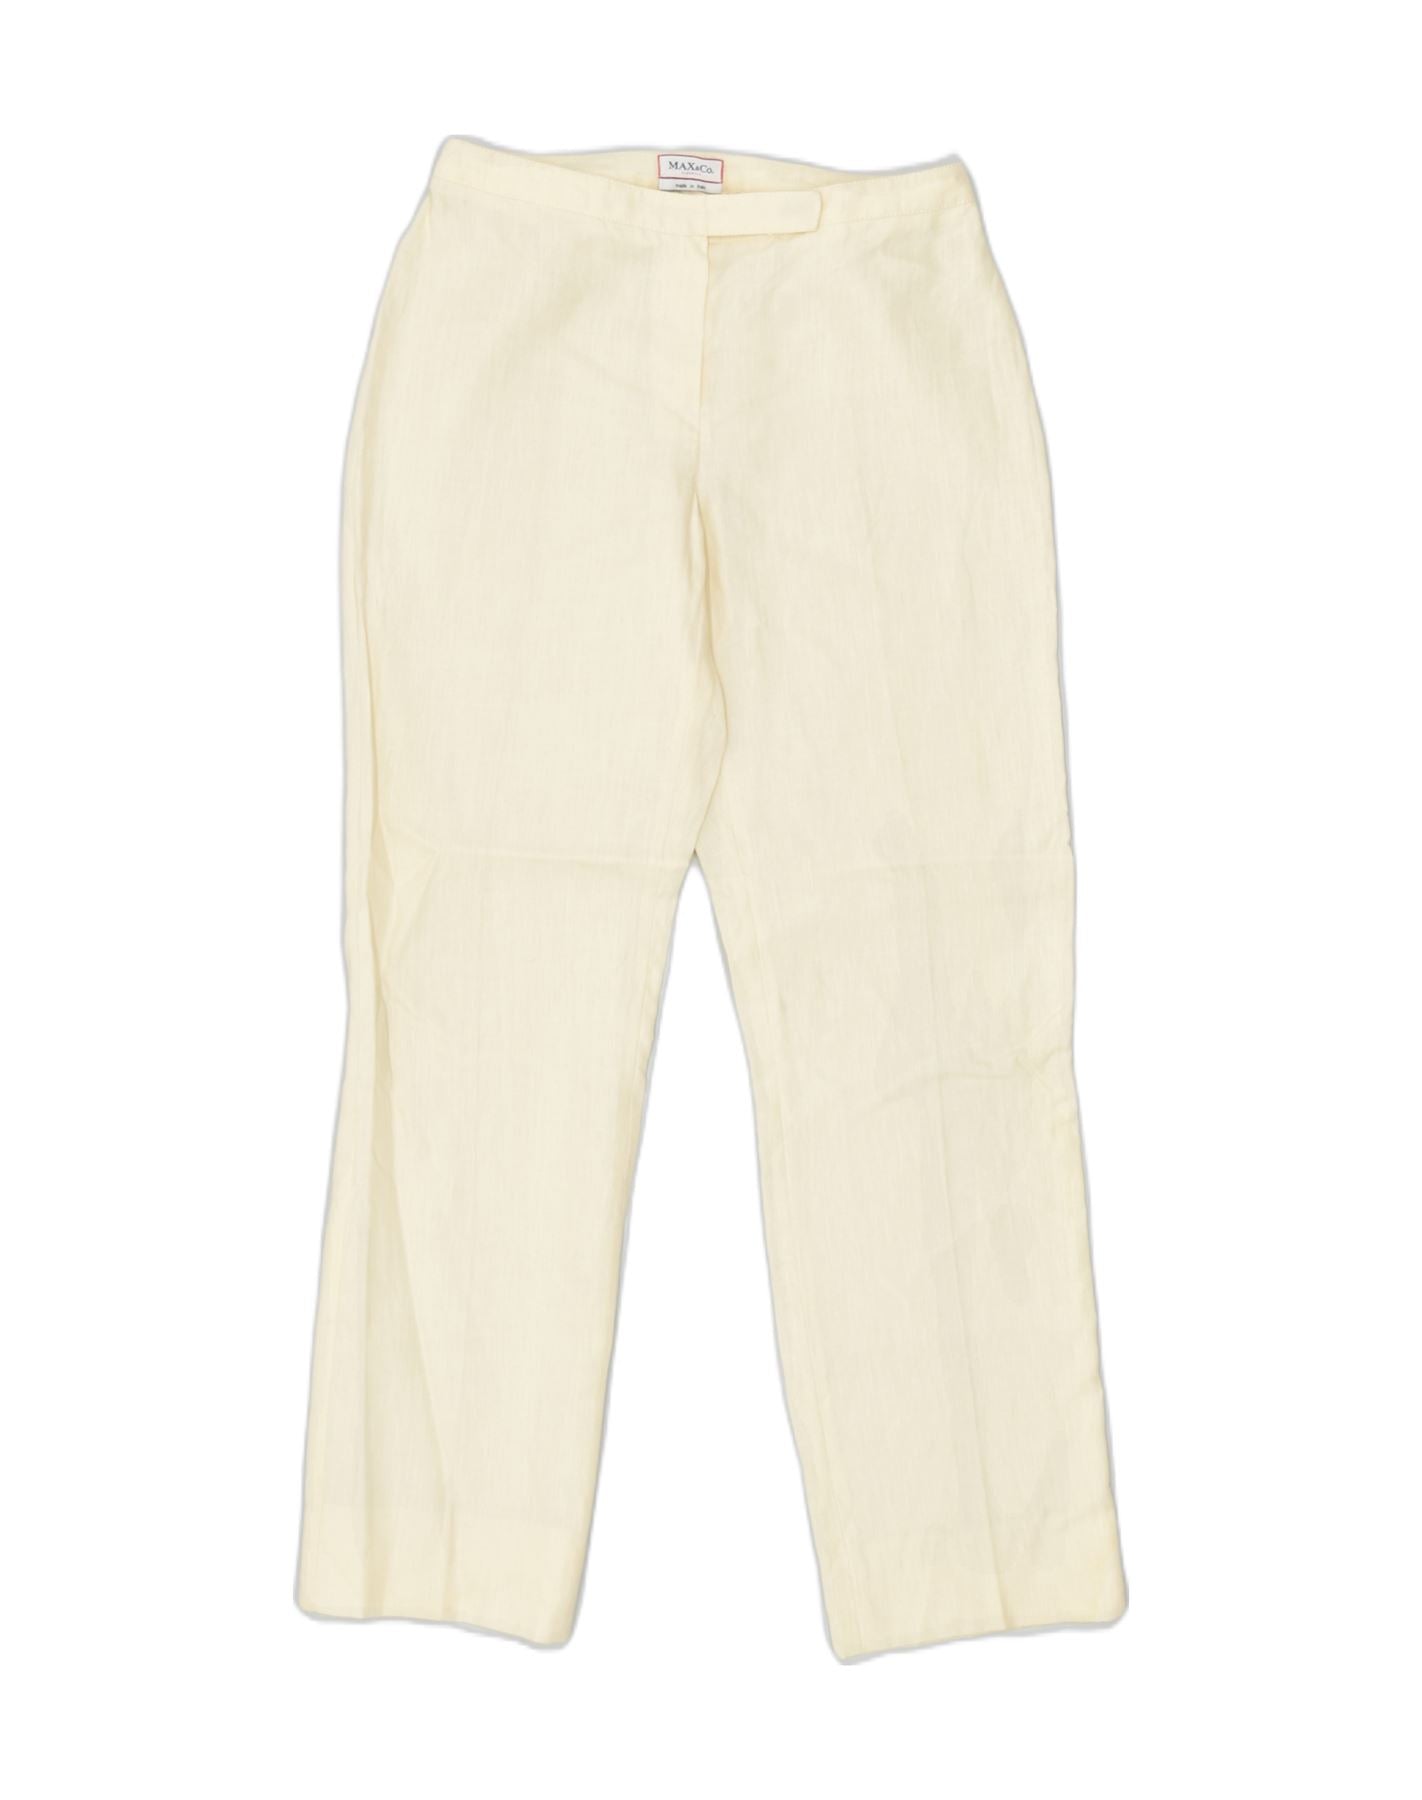 CZDYUF Men's Casual Trousers Cotton Elastic Waist Multi-Pocket Plus  Fertilizer men's Clothing big Size Cargo Pants (Color : D, Size : X-Large  code) : Amazon.co.uk: Fashion